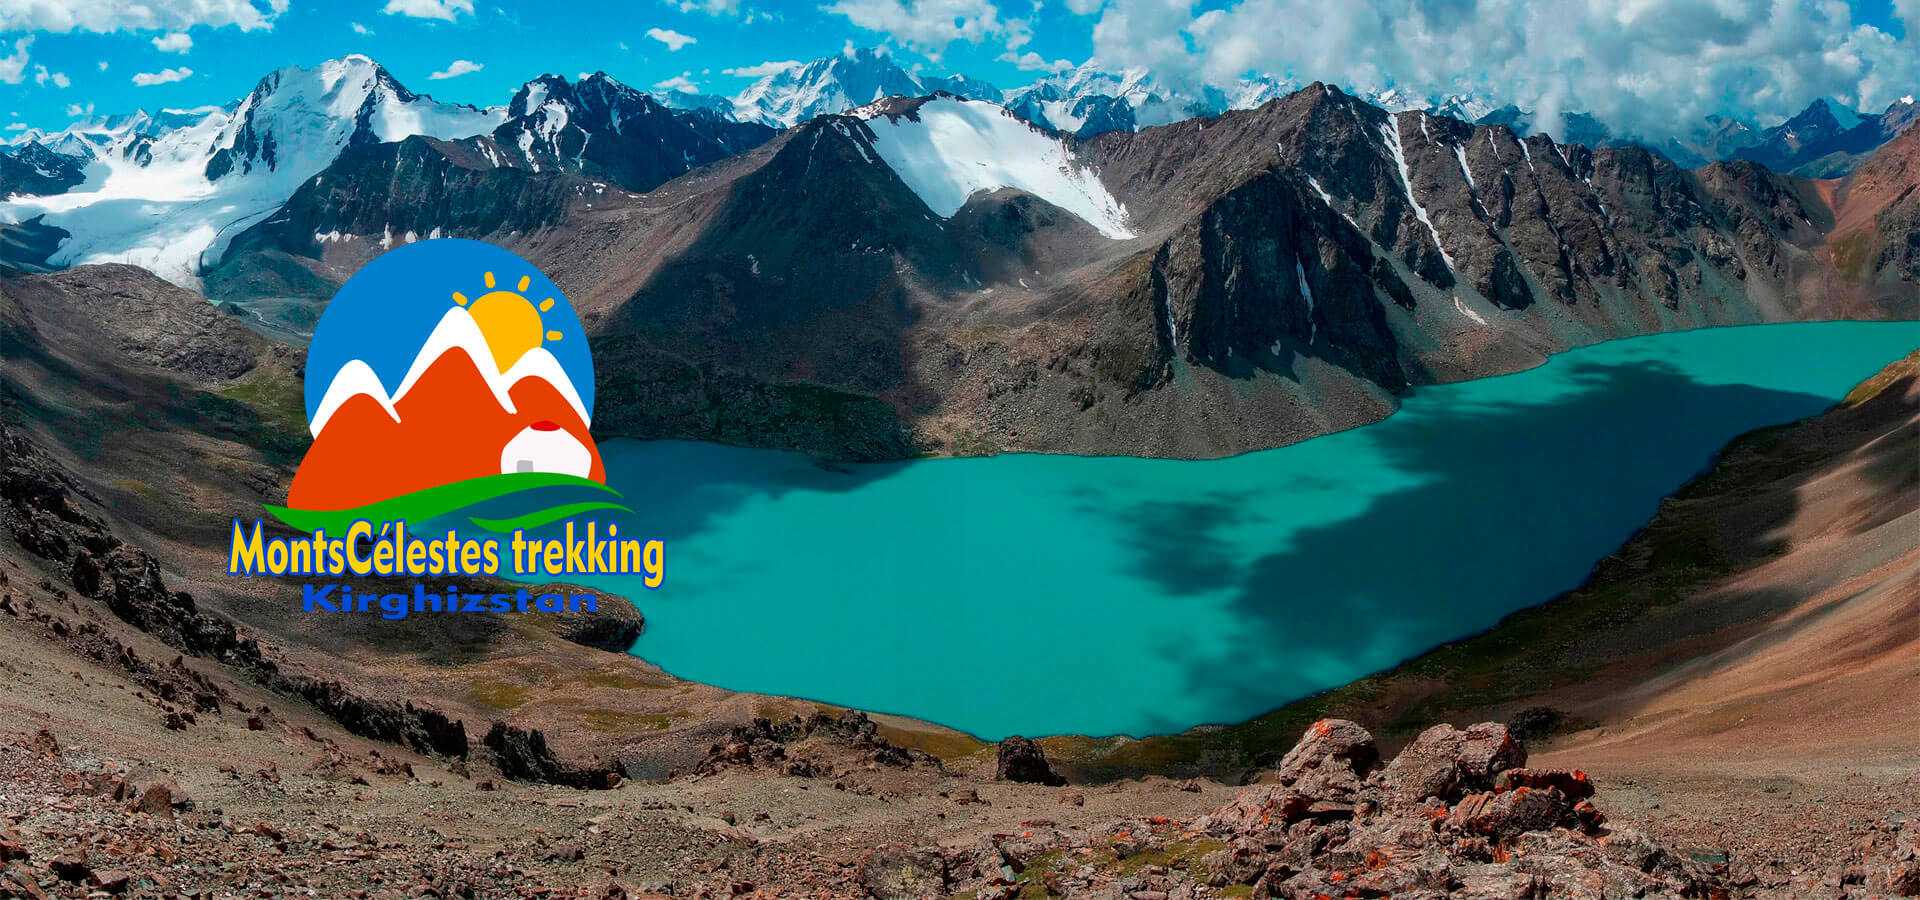 voyage au kirghizistan, trek, randonnée, ski de randonnée et découverte culturelle